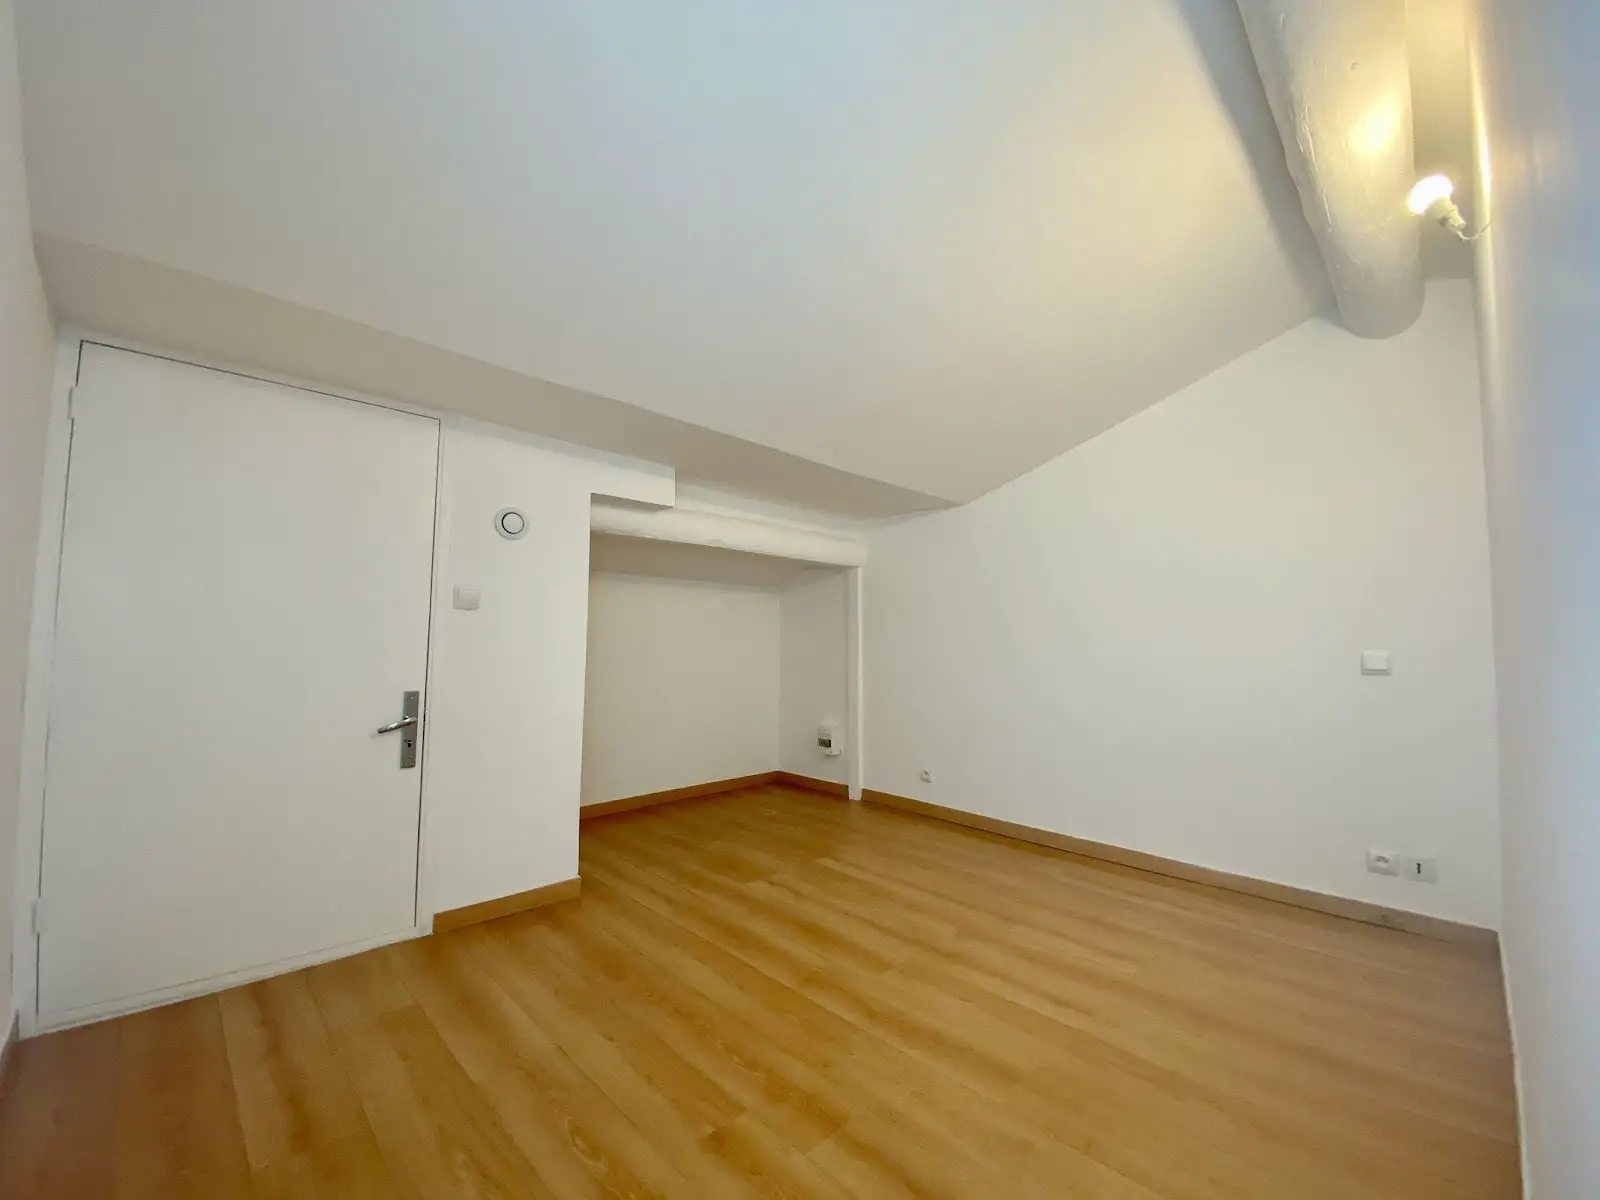 Vente appartement 3 pièces 55 m2